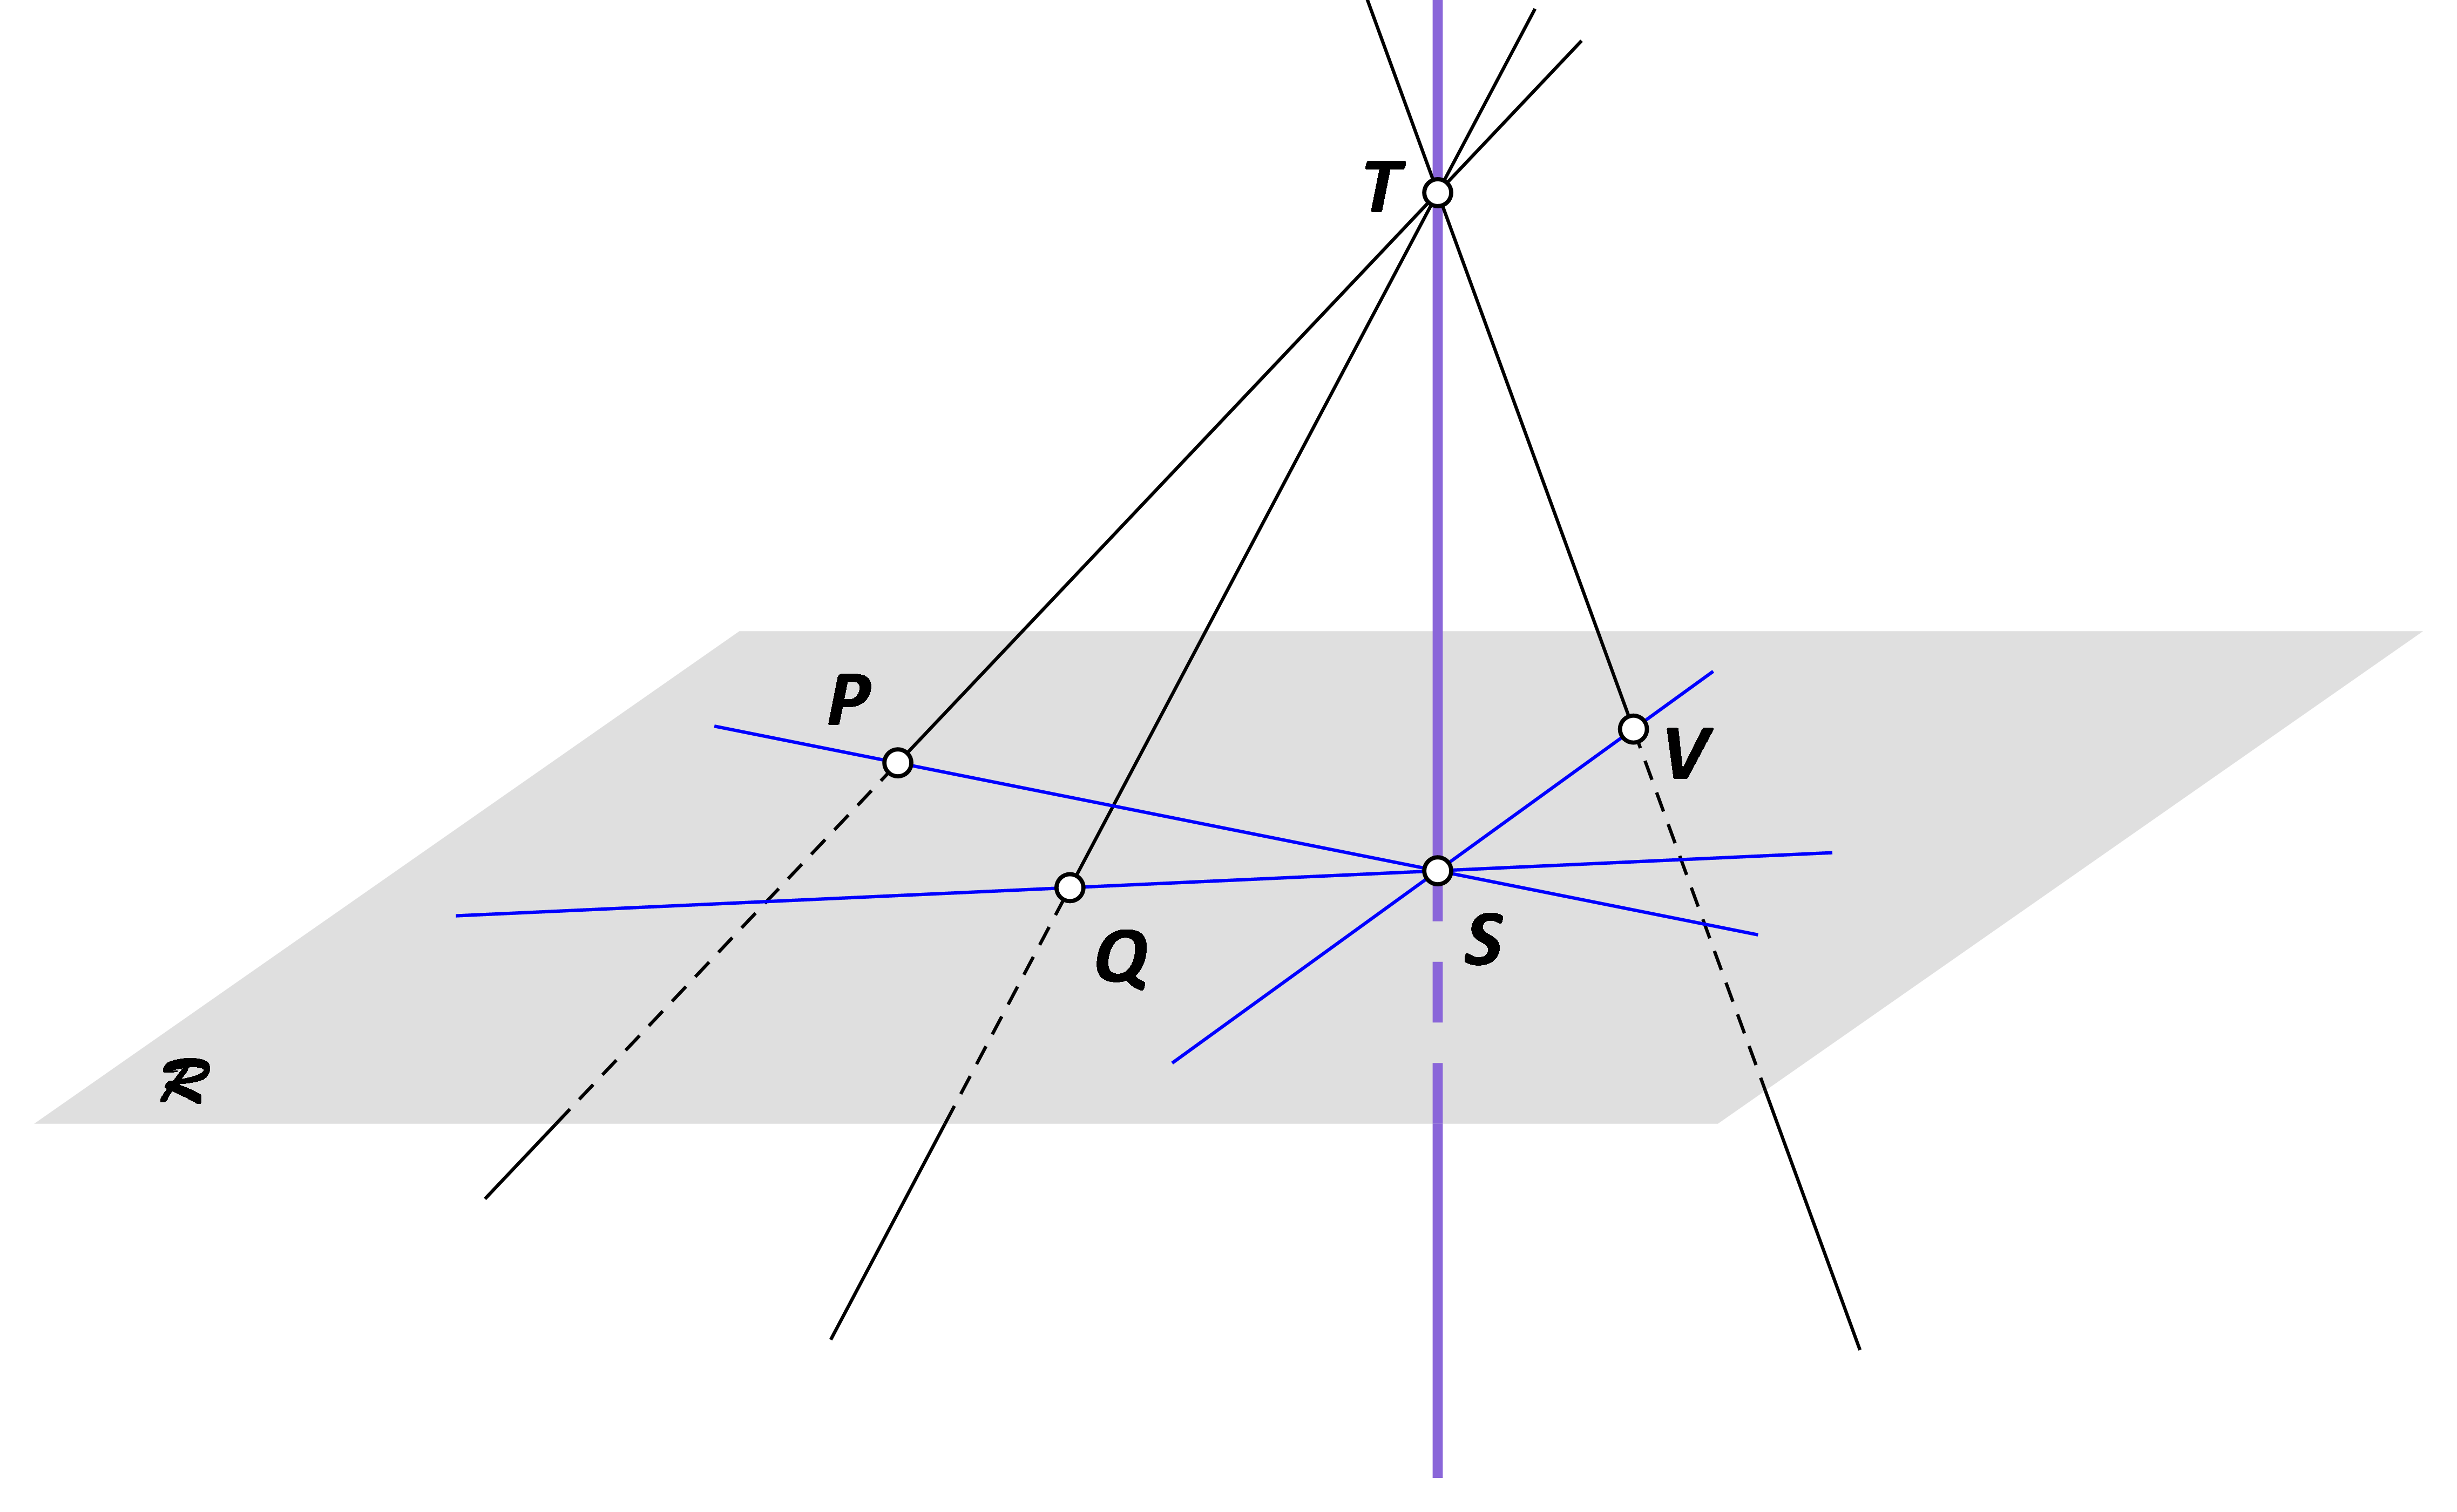 U ravnini R istaknuta su tri pravca koji se sijeku u točki S. Nacrtani su pravci točkom T koji probadaju ravninu R. Pravac TS okomit je na tu ravninu.